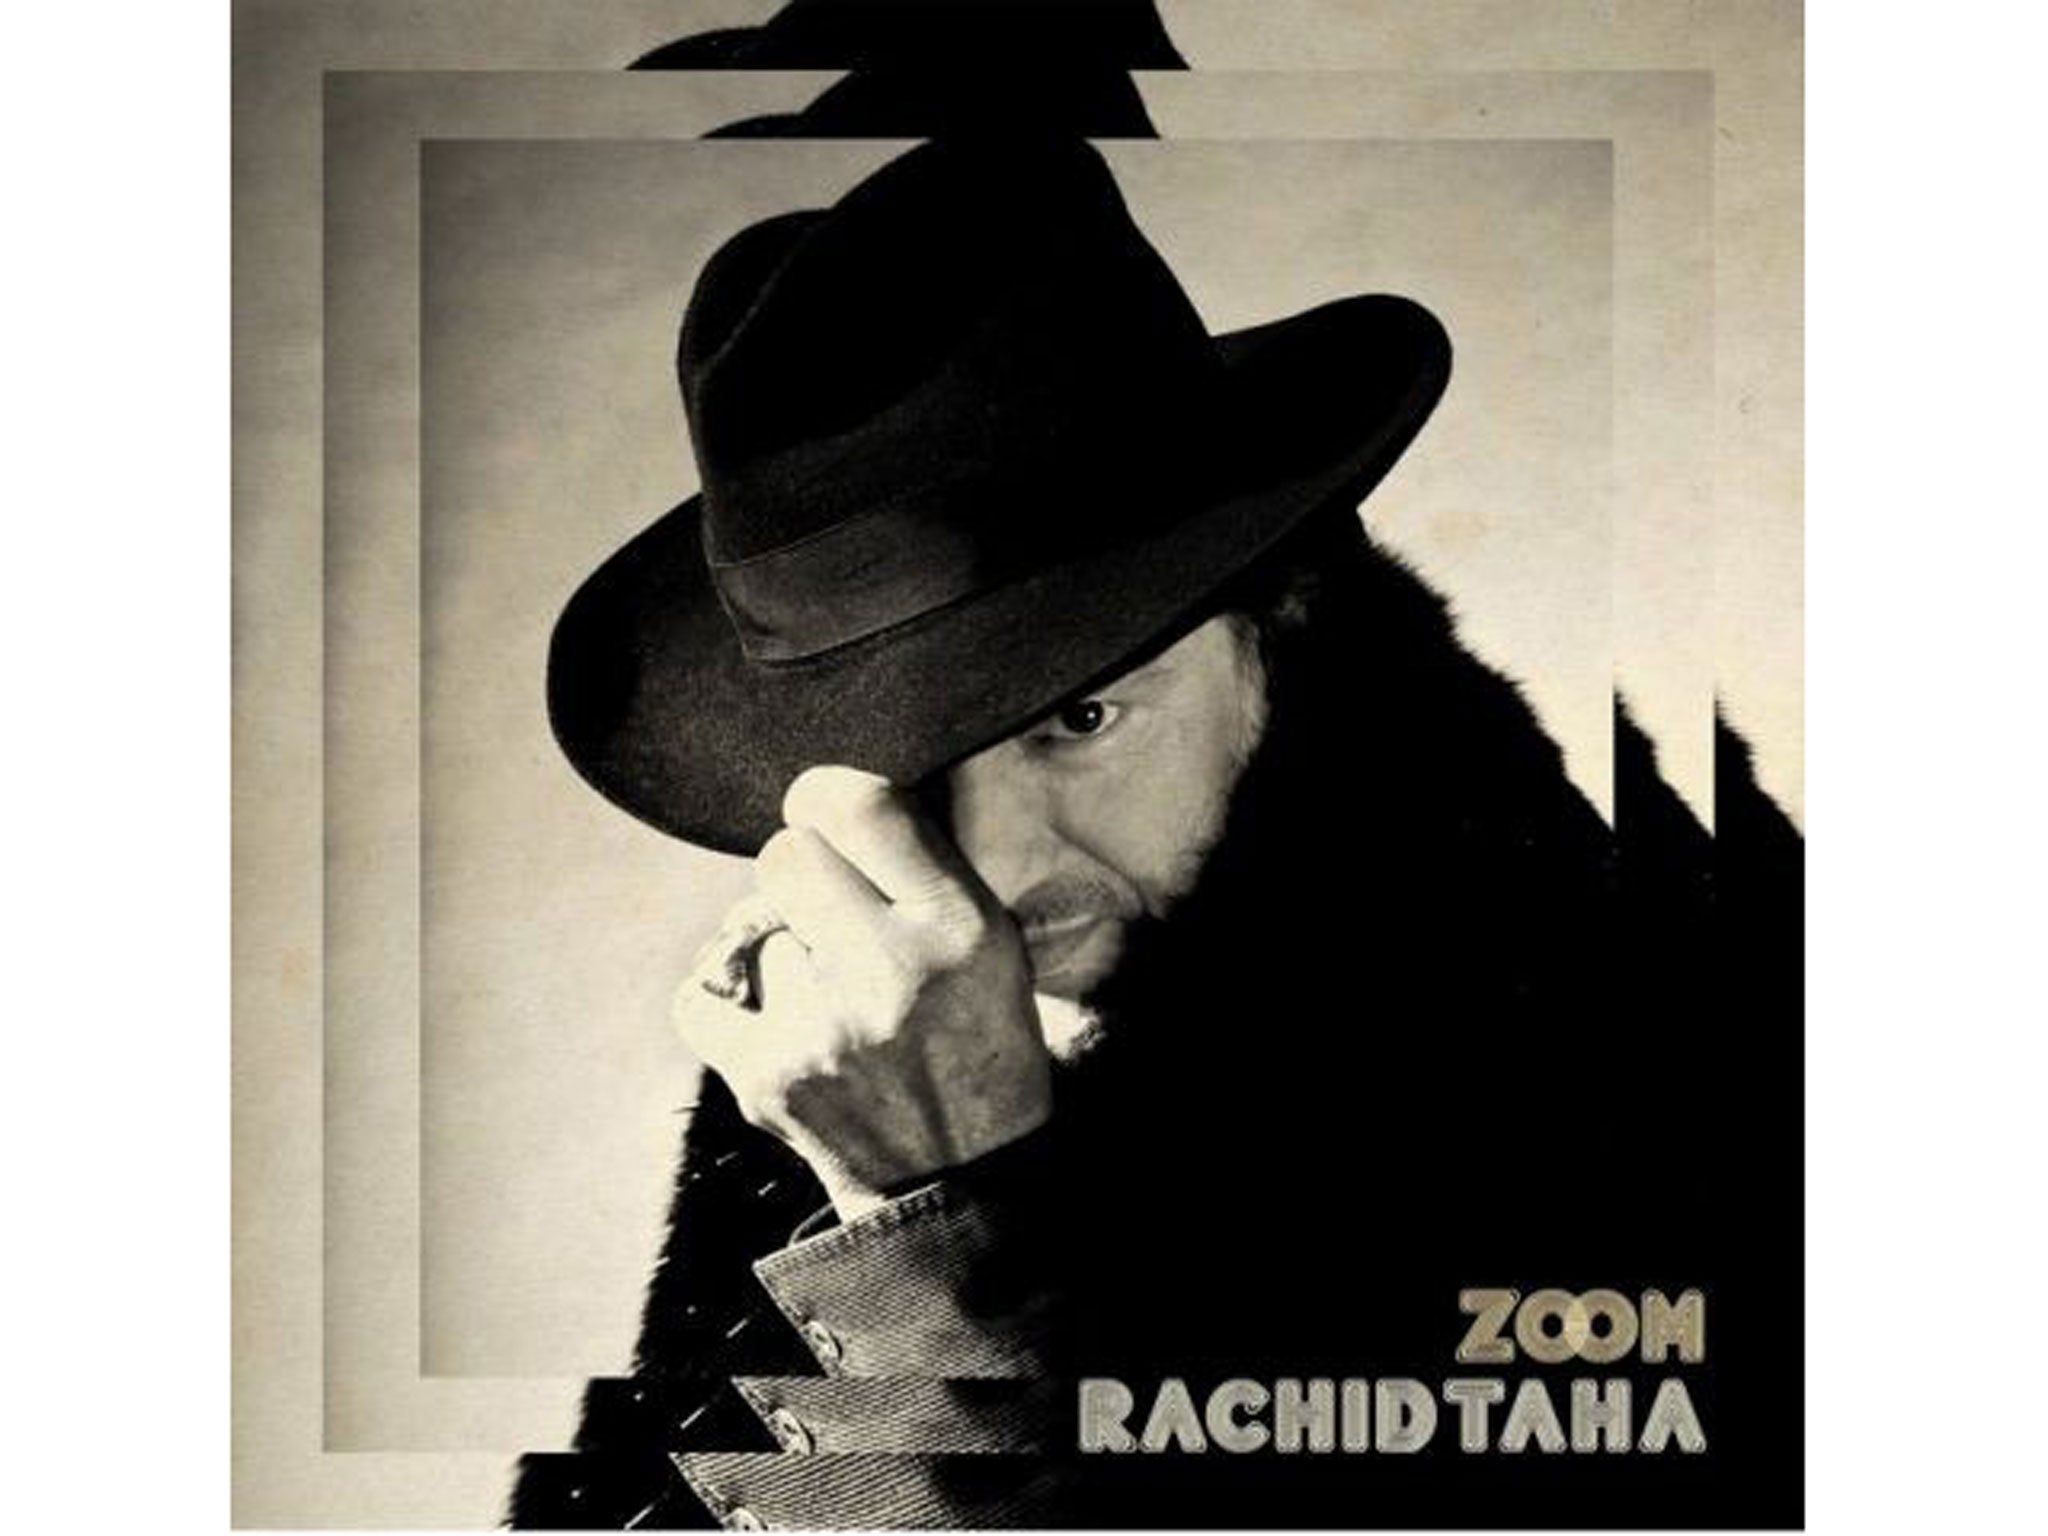 Rachid Taha, Zoom (Wrasse)